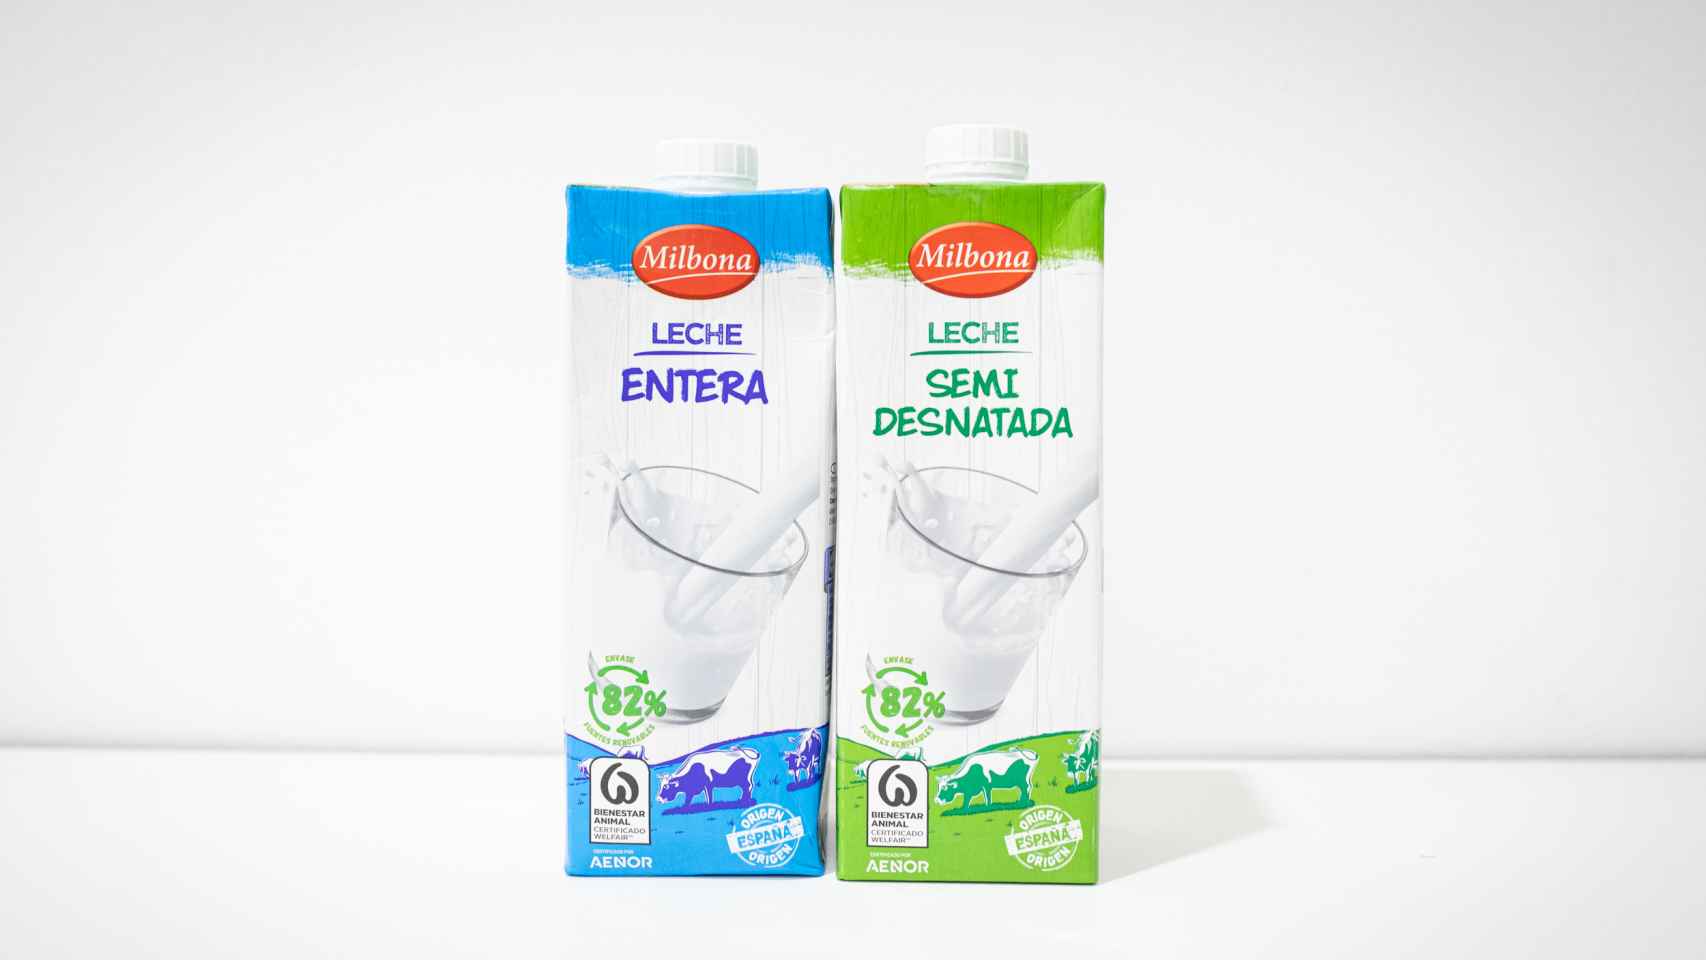 Dos productos lácteos de Milbona, una marca propia de Lidl.